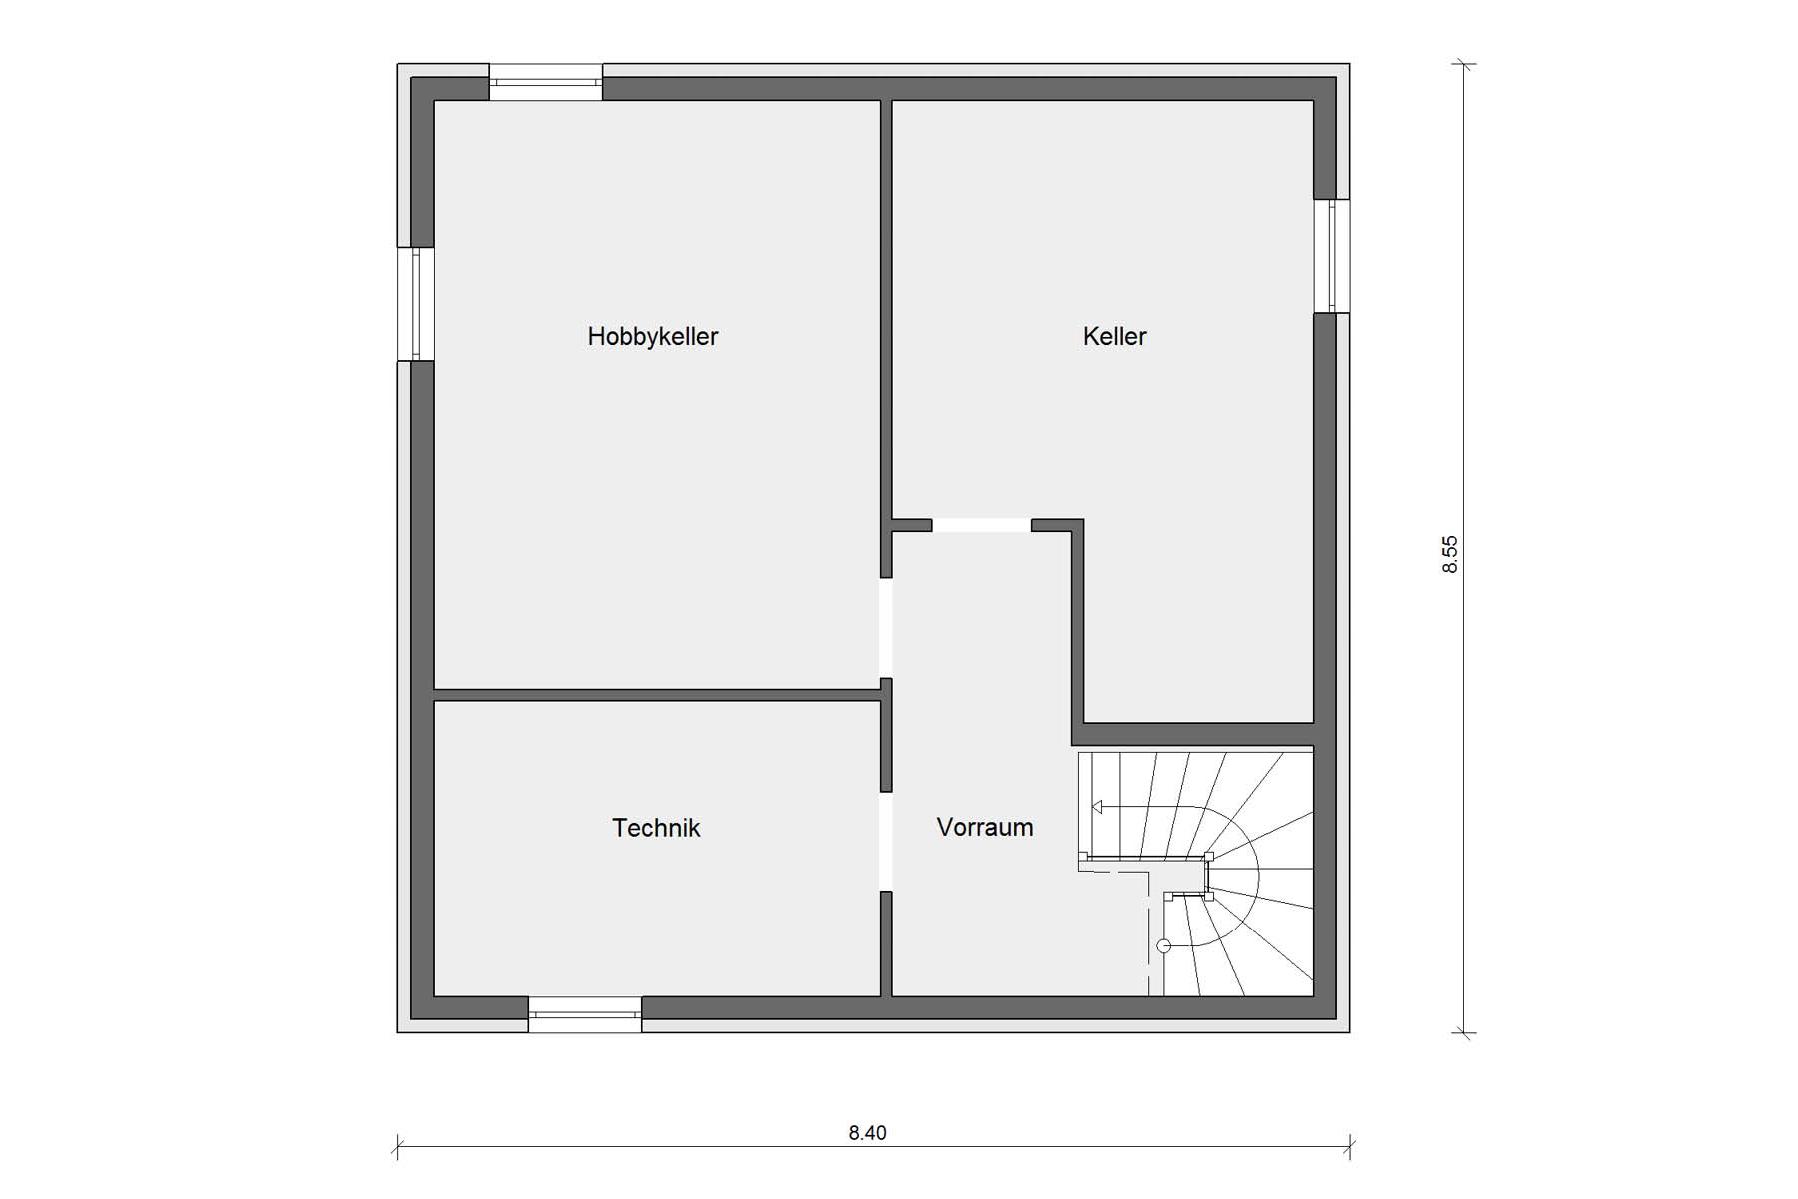 Basement Floor plan Detached house Bauhaus style architecture E 20-119.1